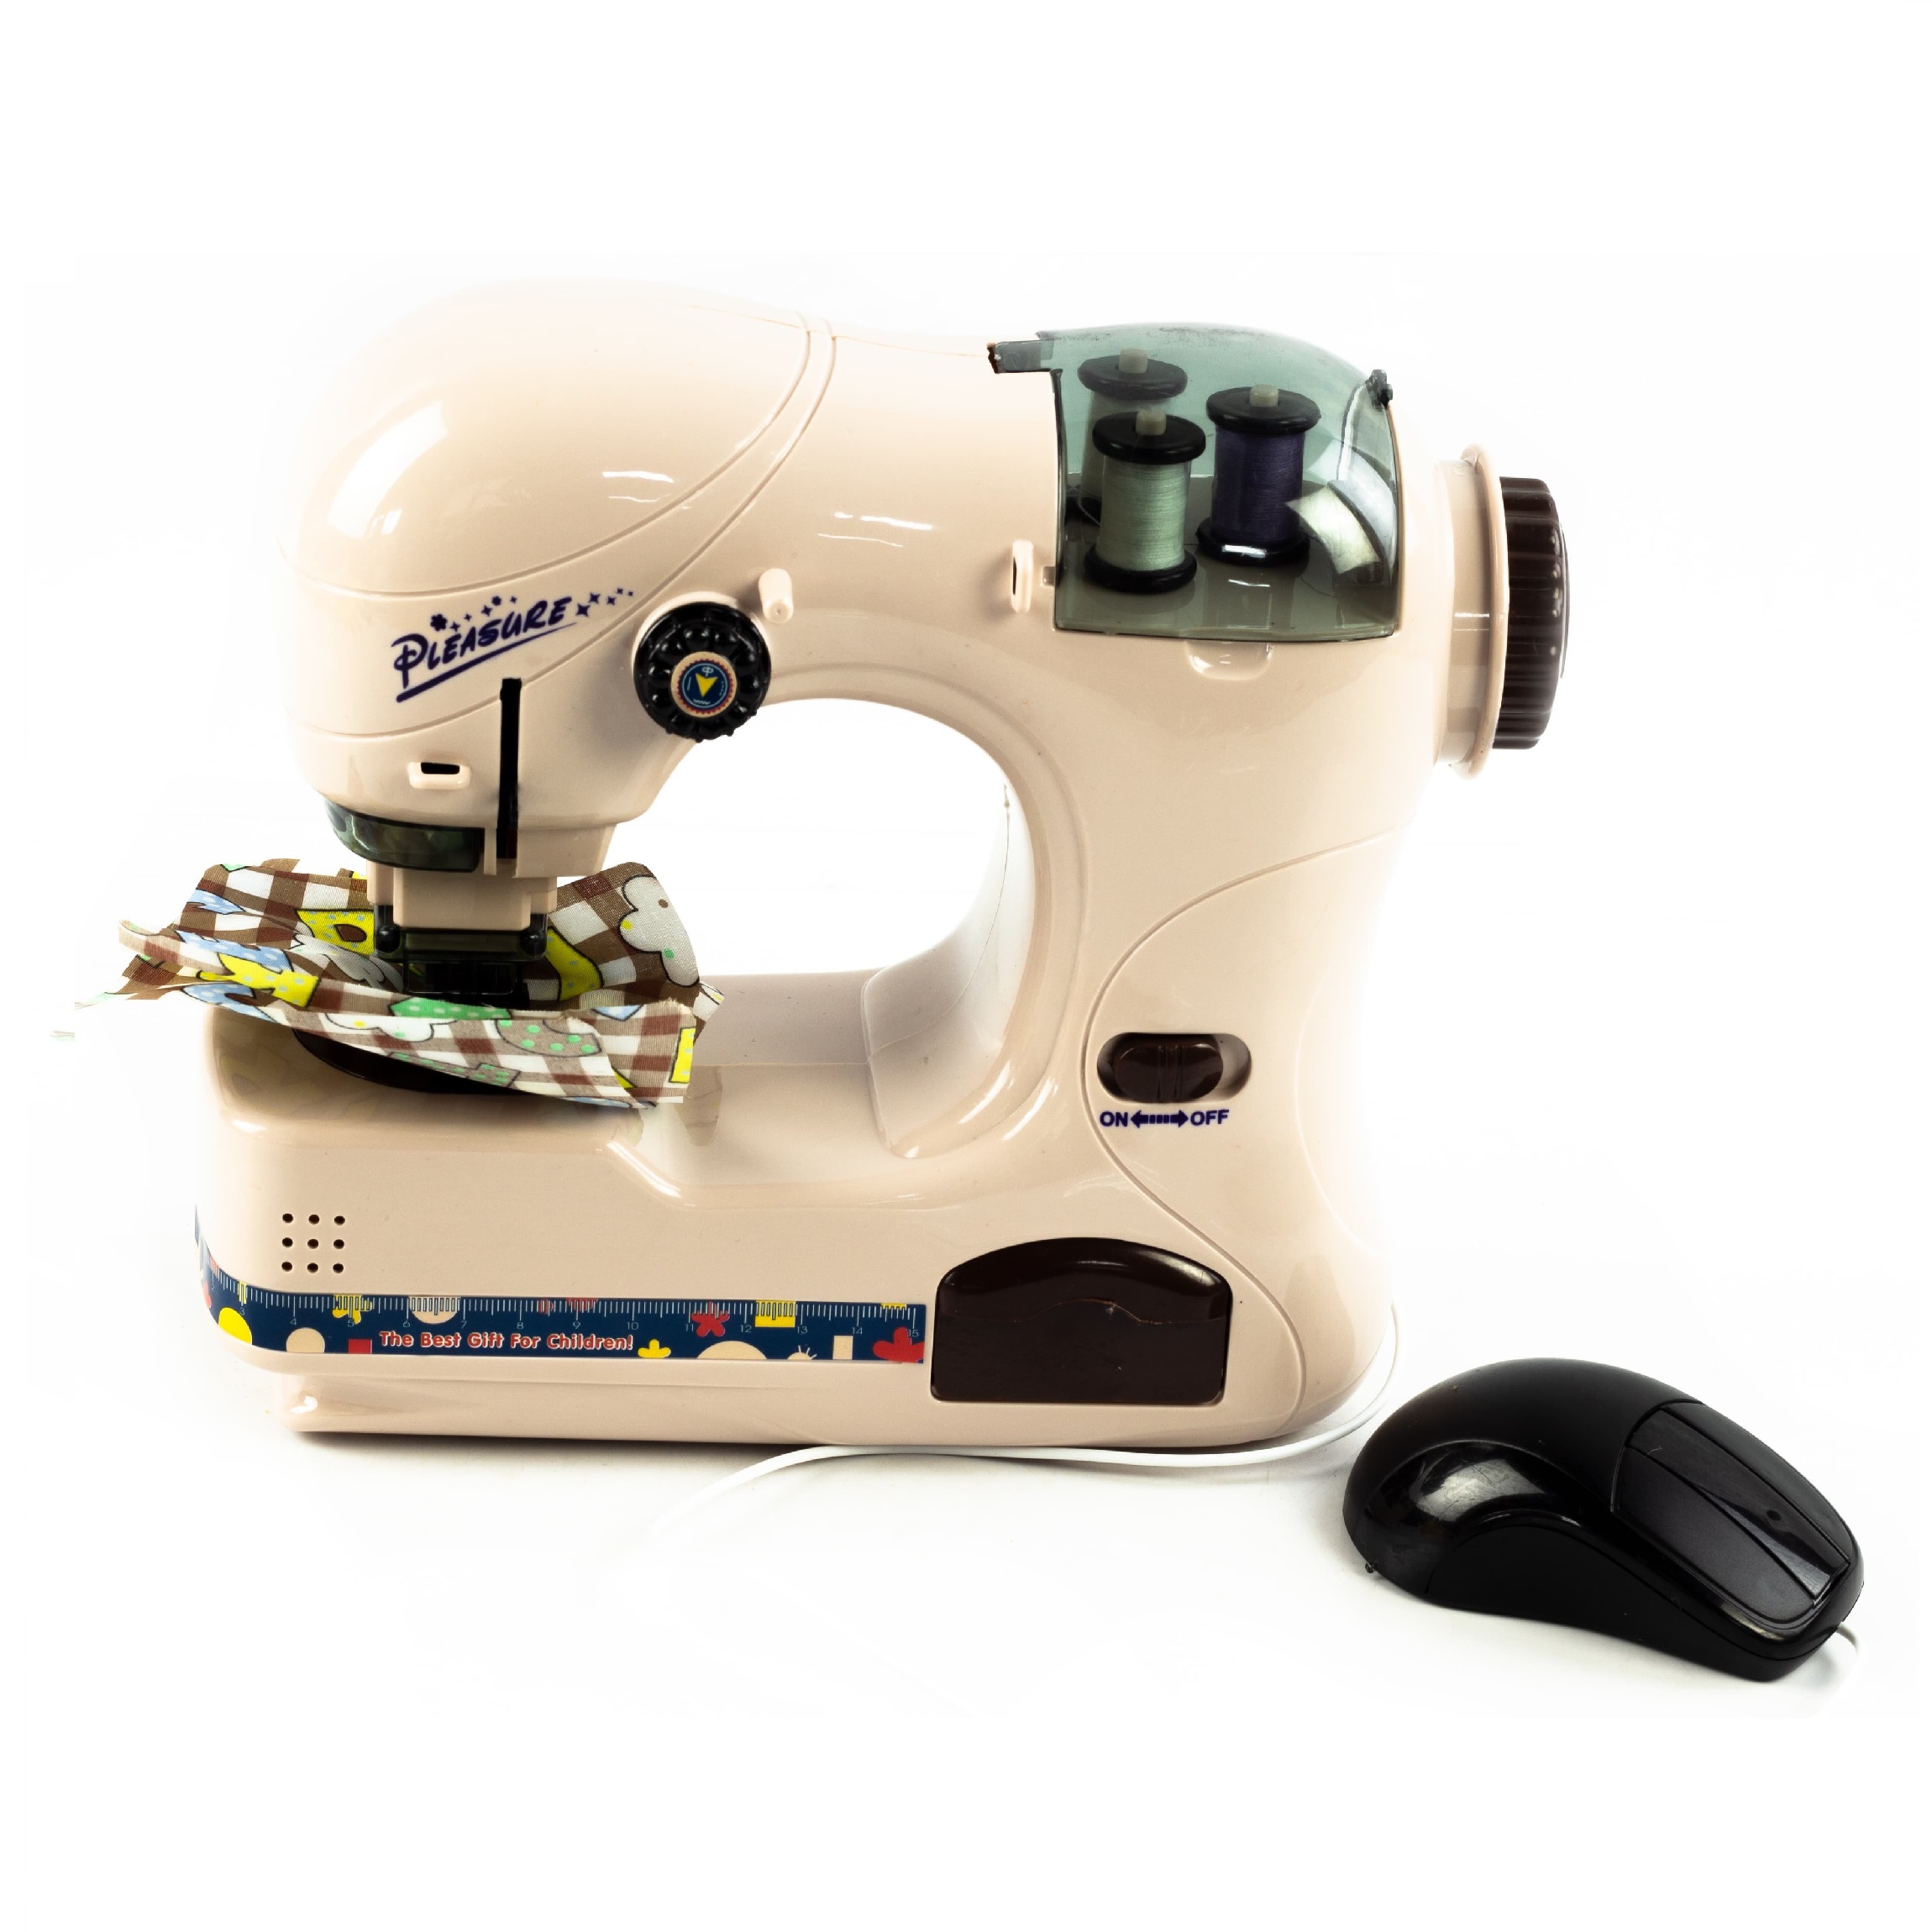 Игрушечный набор бытовой техники «Швейная машина» с нитками и мышкой для включения (6739A)